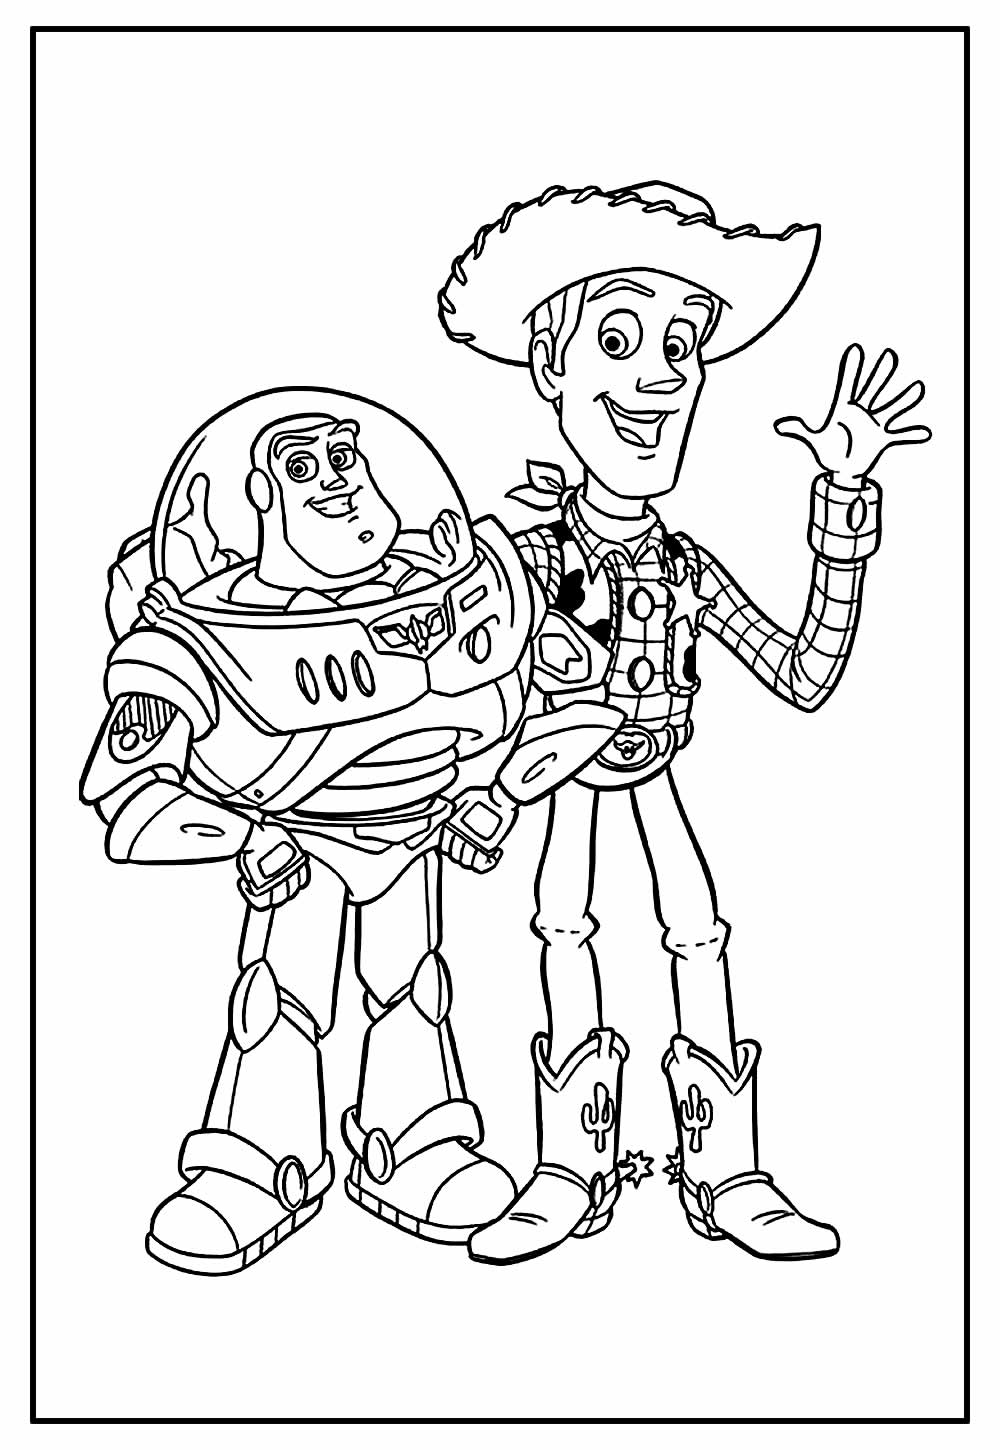 Desenho de Woody e Buzz Lightyear para colorir